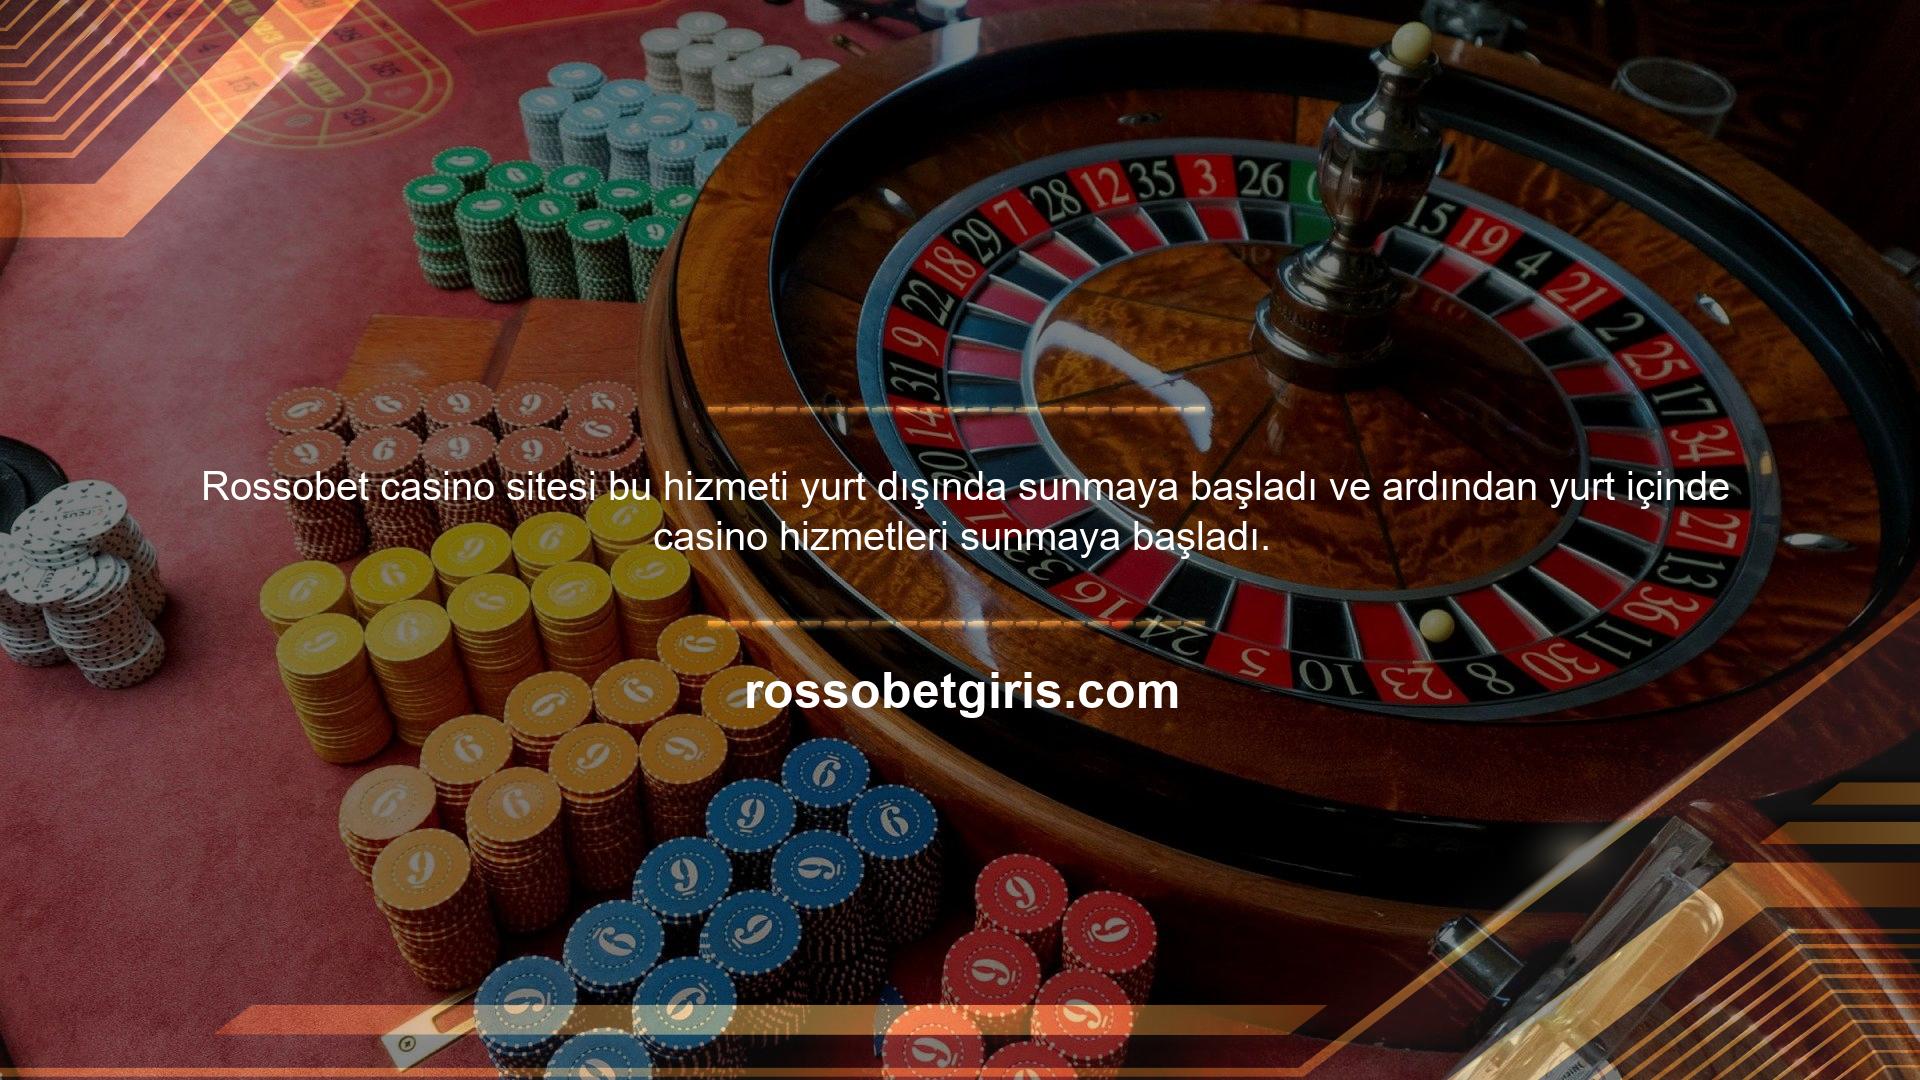 Bu site spor bahisleri ve casino bahis lisanslama hizmetleri sunmaktadır